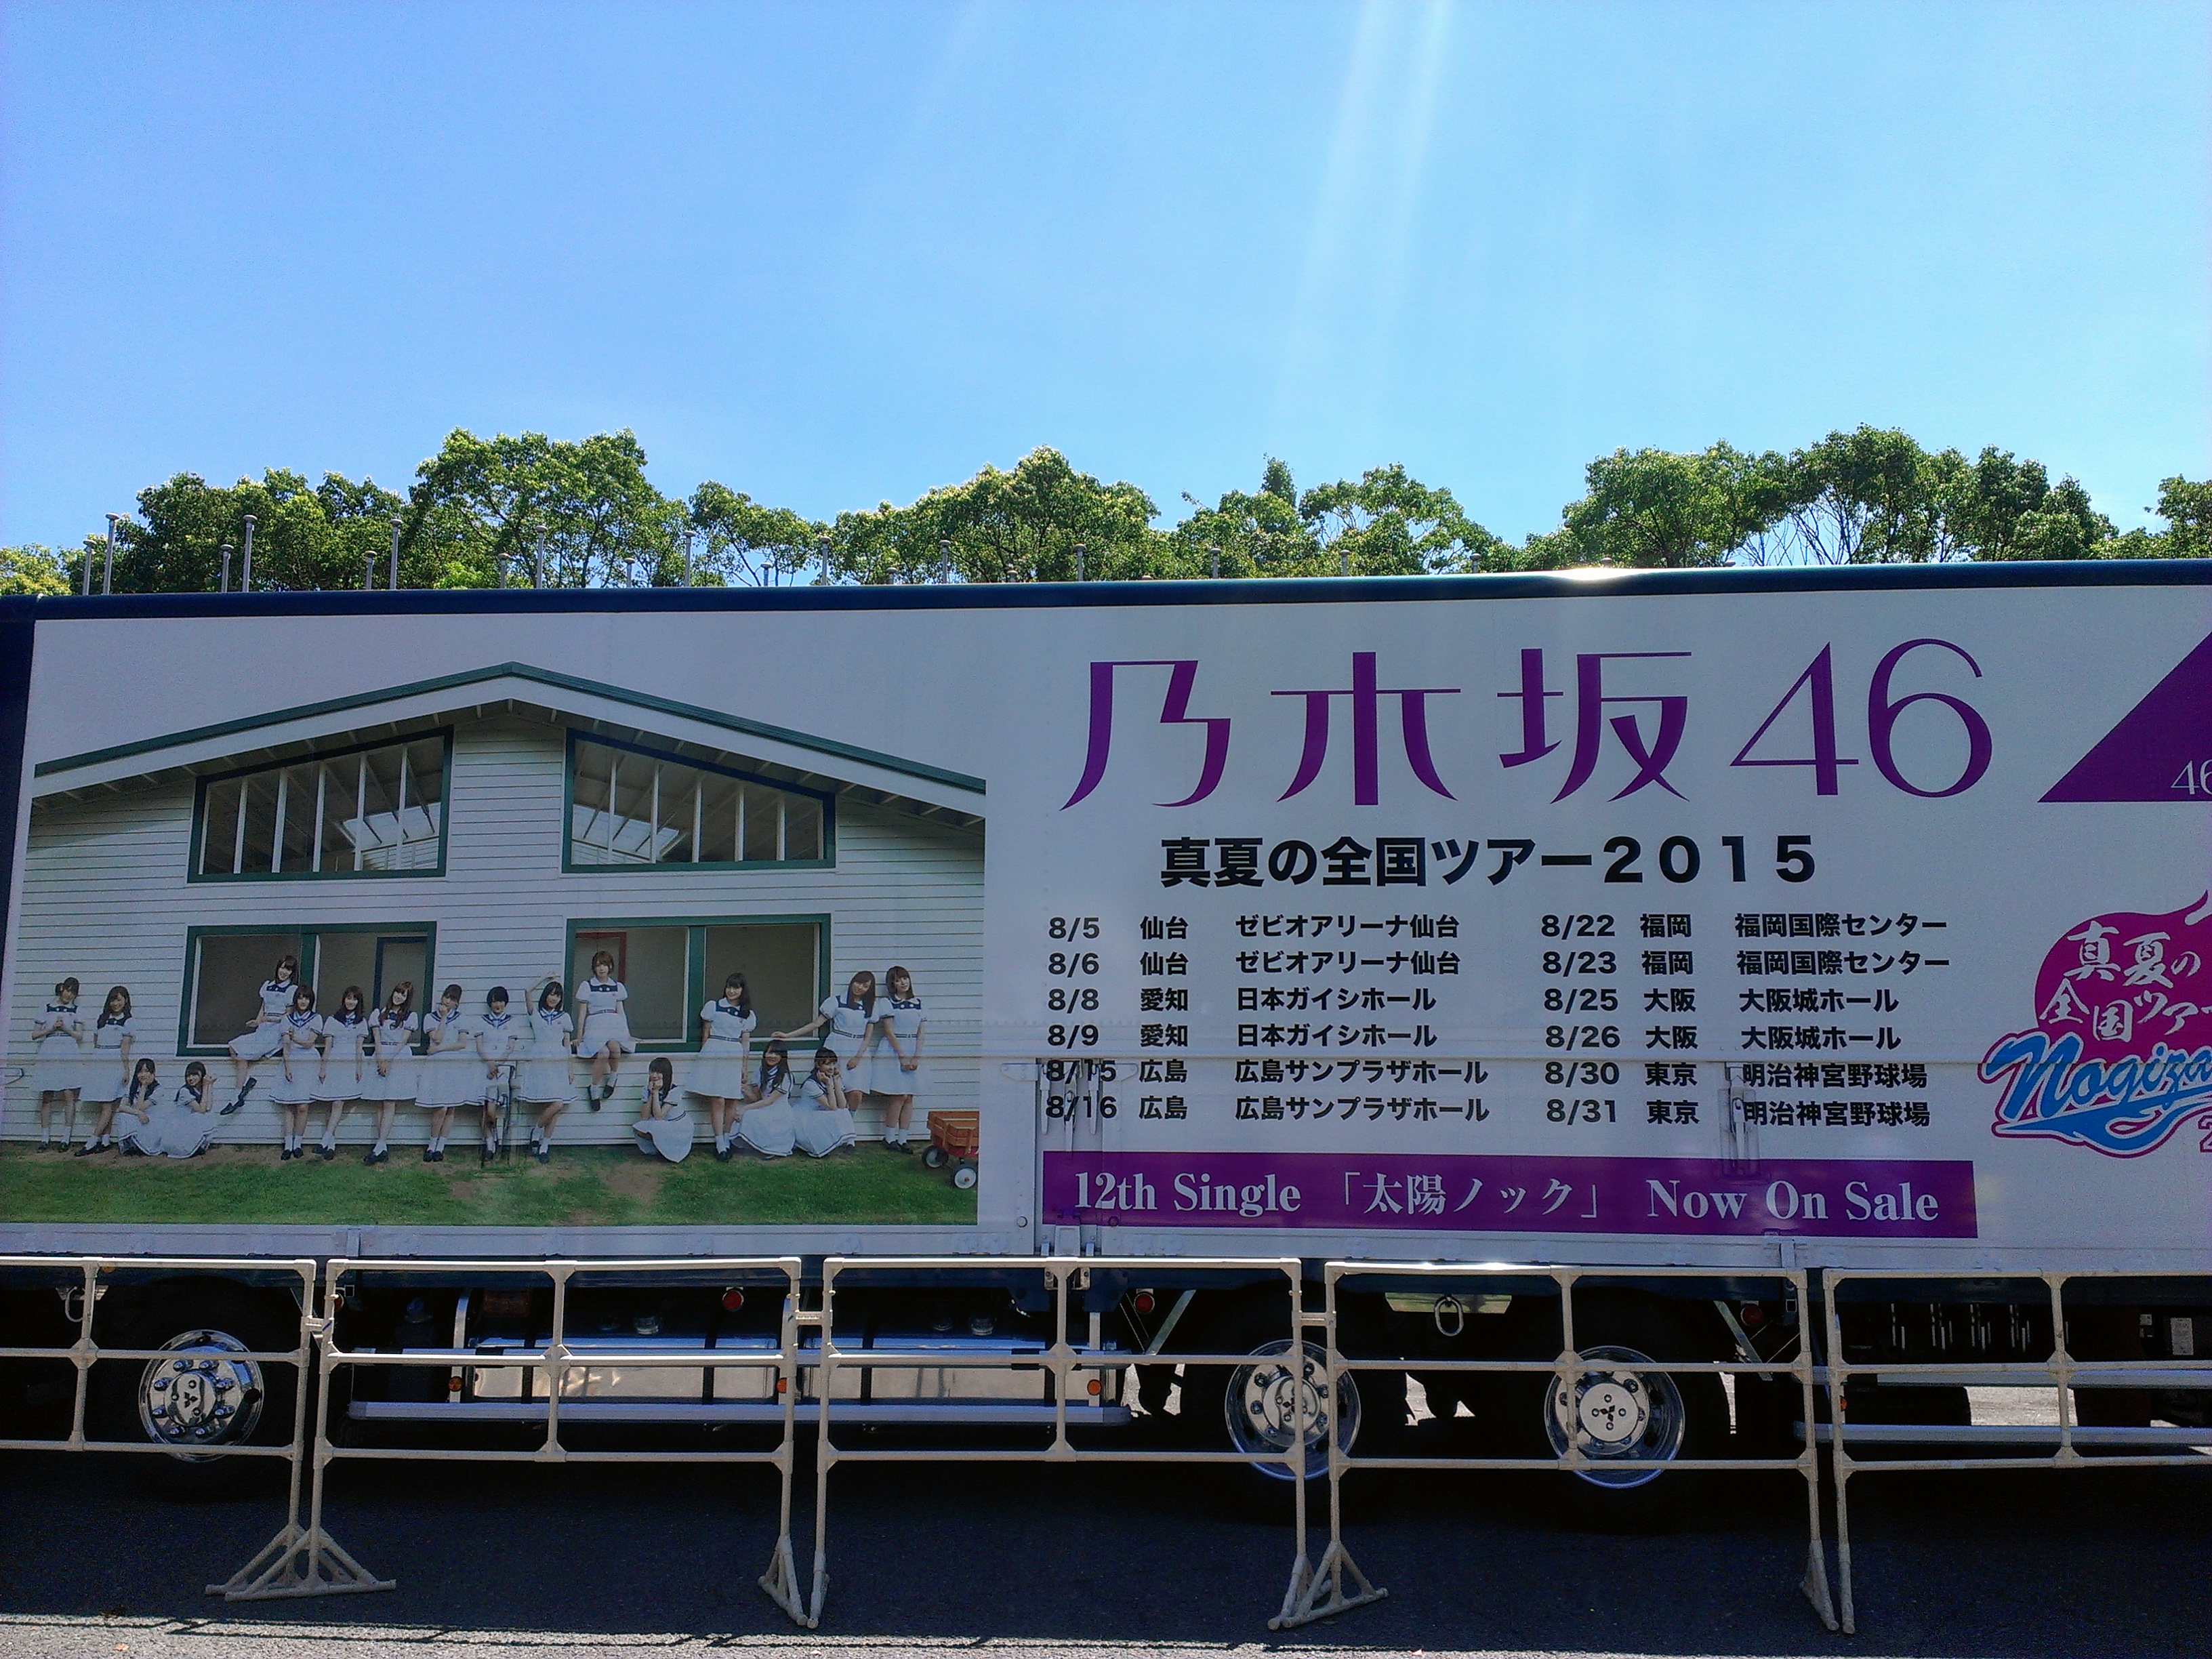 乃木坂46真夏の全国ツアー2015 大阪2日目昼公演に参加しました What I Know ワッタイナ